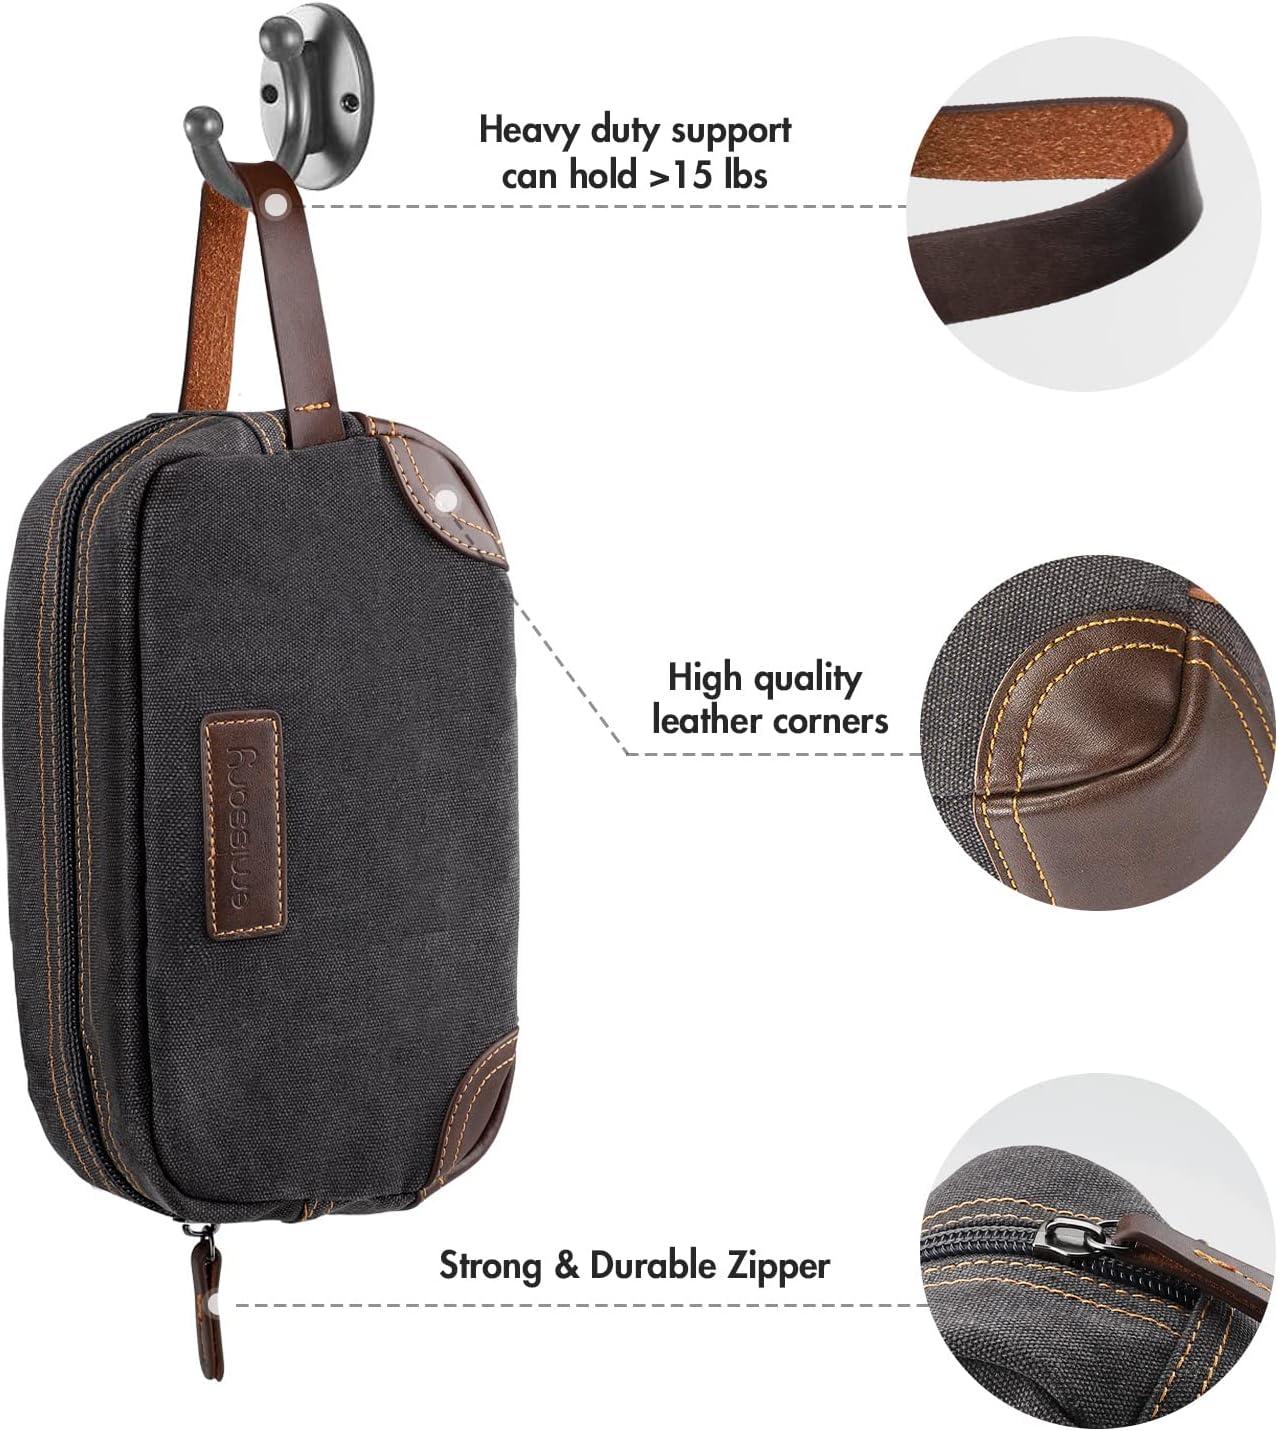 emissary Men's Toiletry Bag, Leather and Canvas Travel Toiletry Bag, Dopp  Kit for Men, Travel Bathroom Bag Men's Shaving Kit, Travel Kit Small Bags